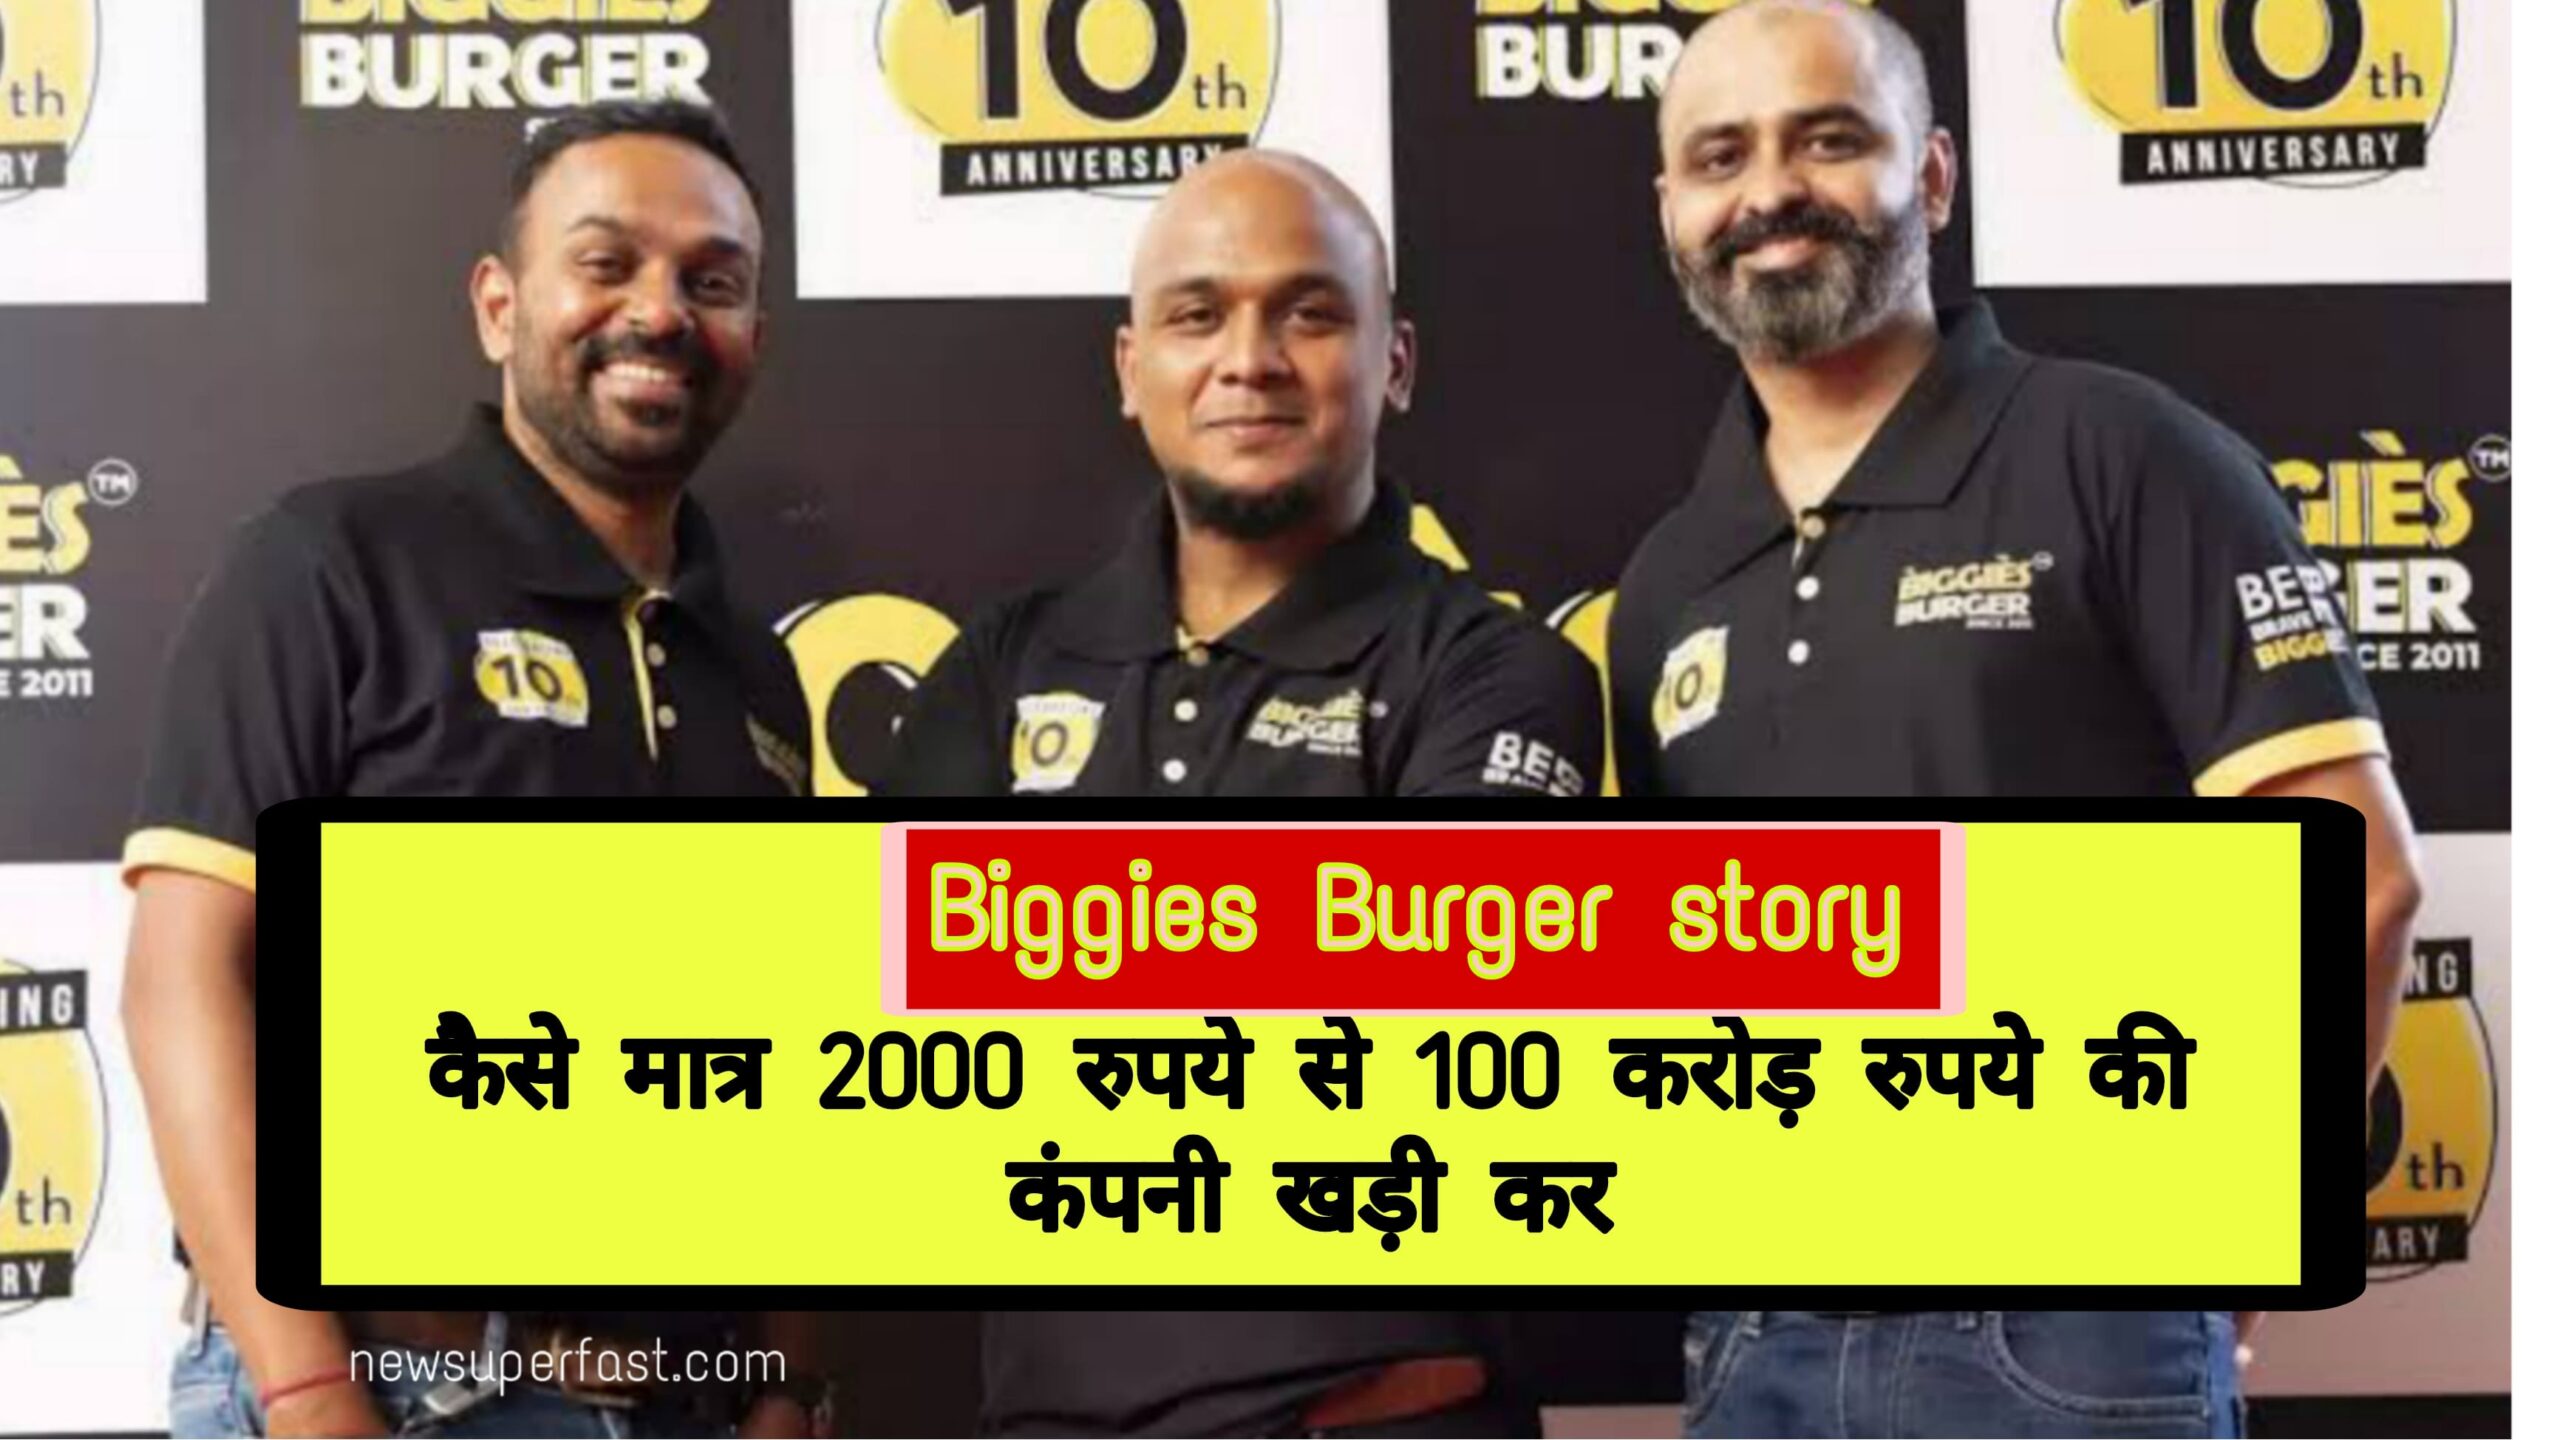 Biggies Burger story